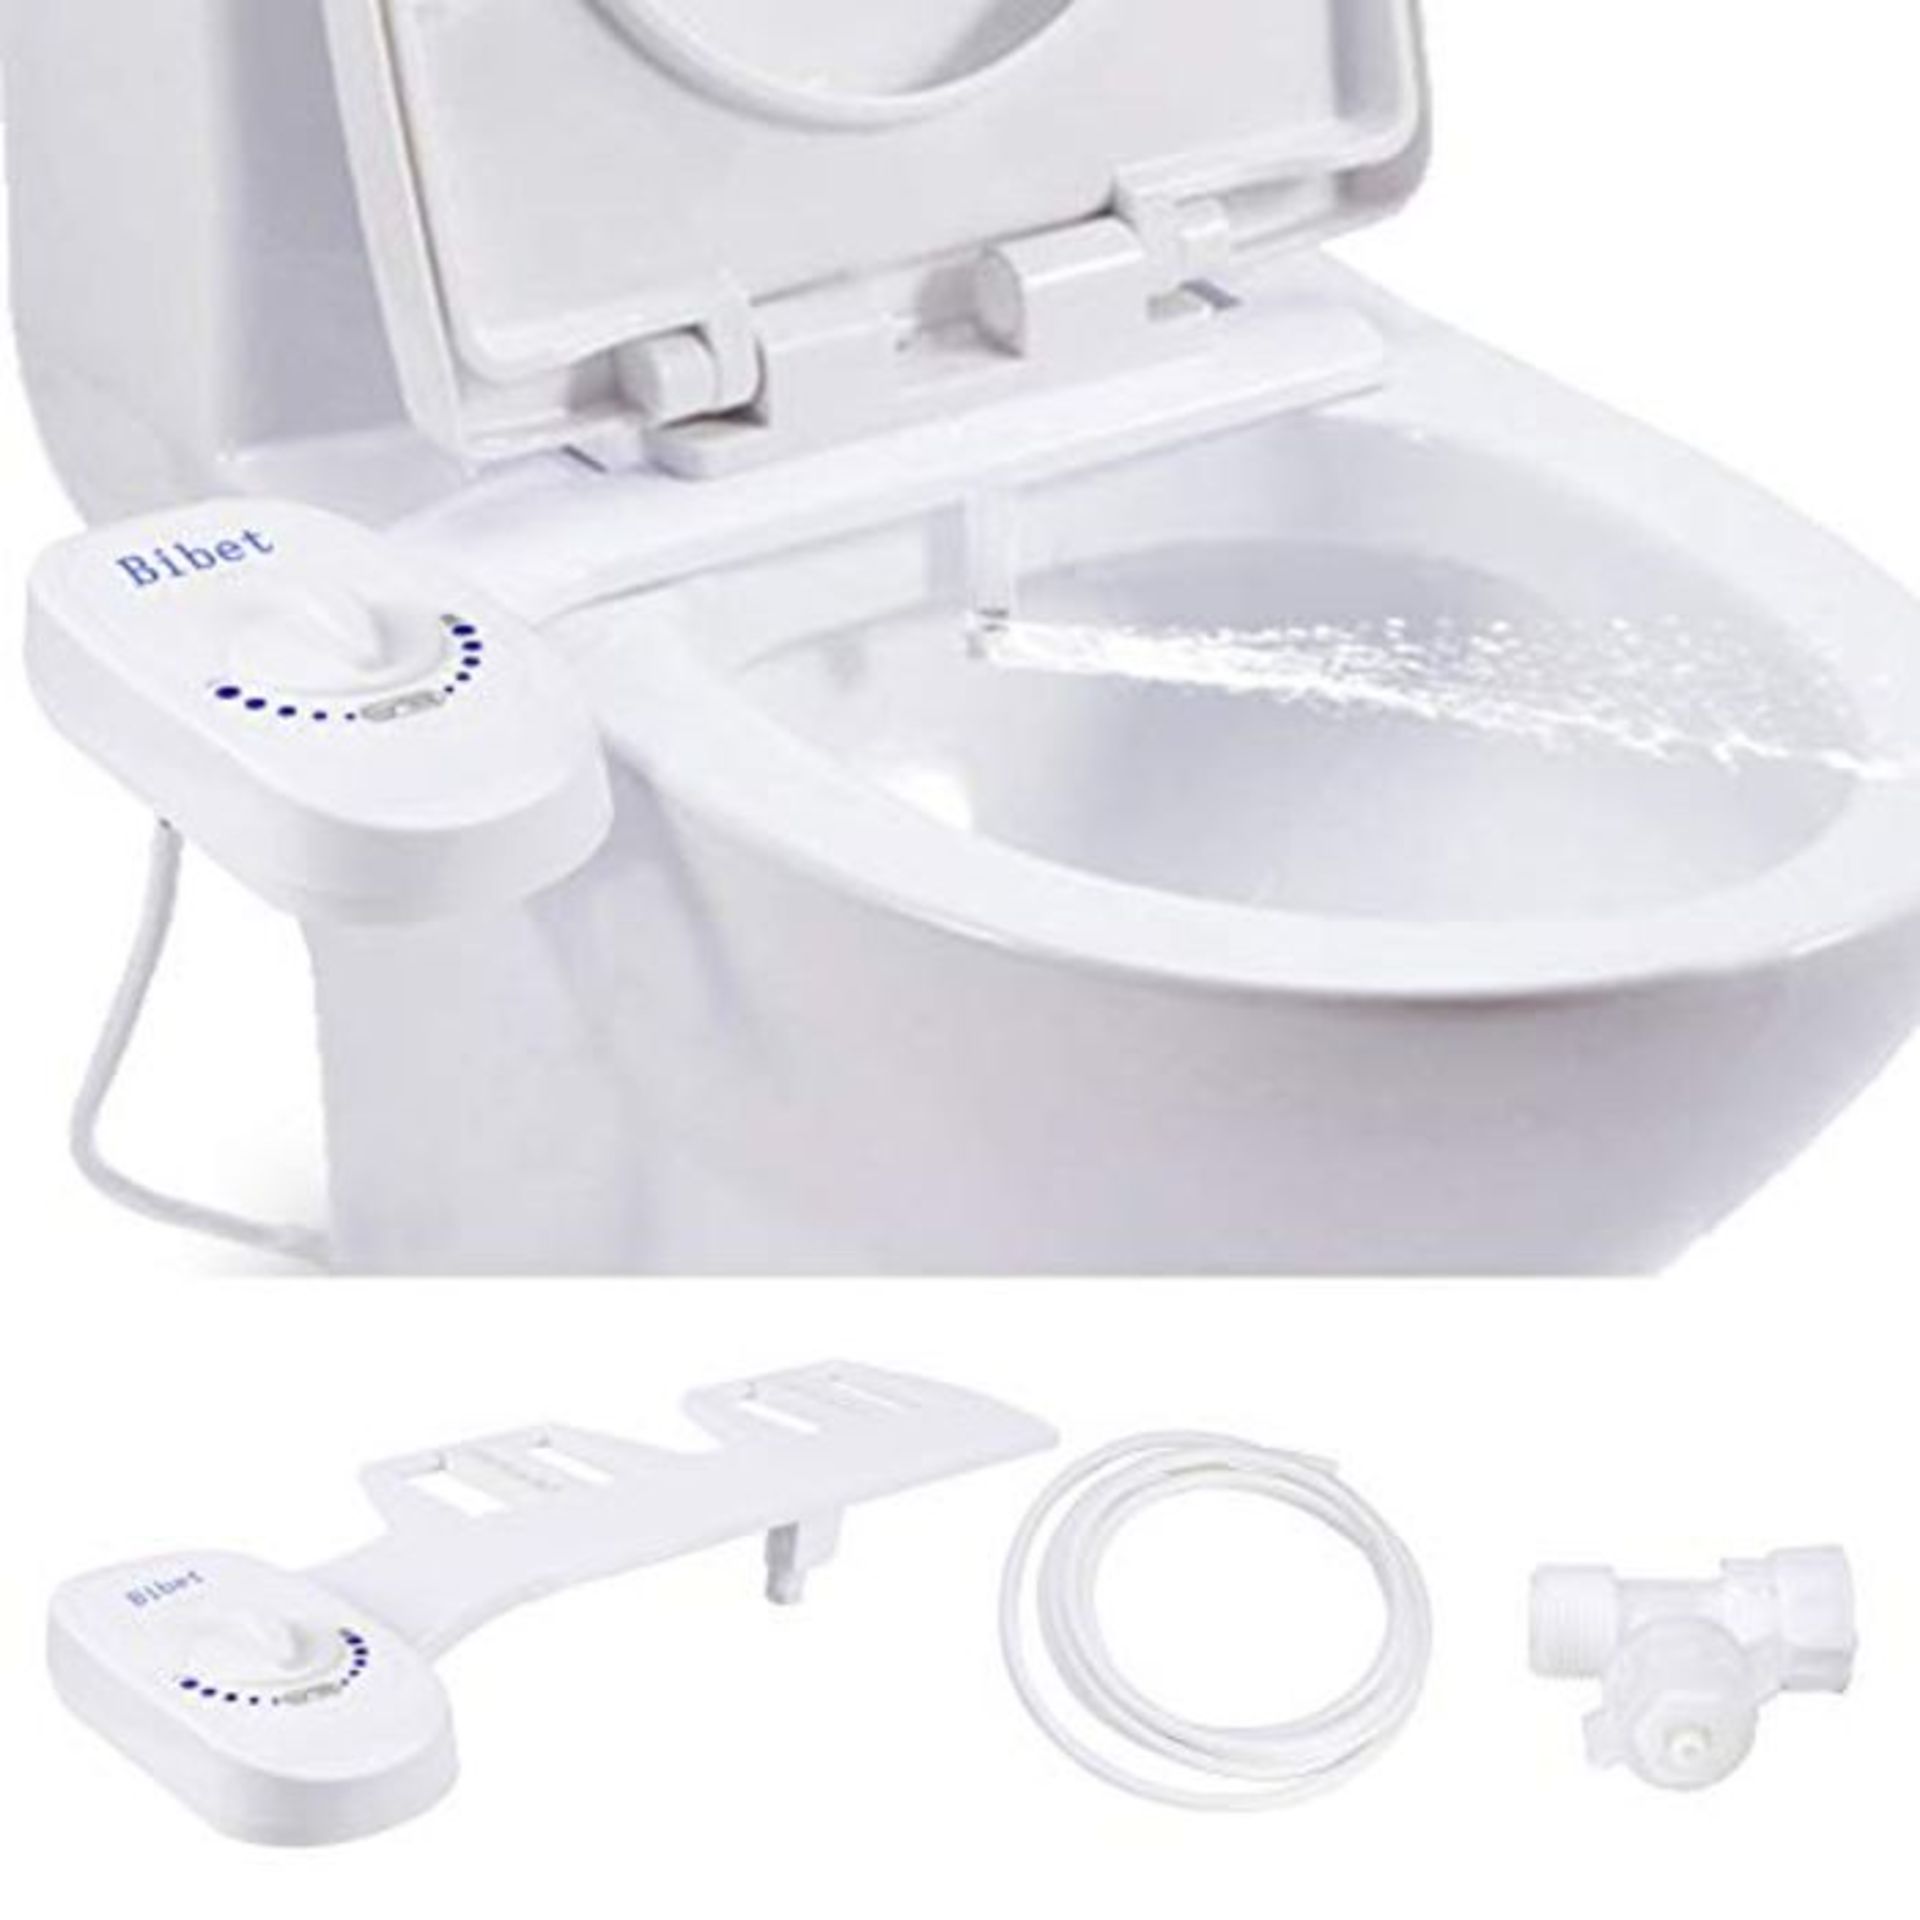 GARDOM Bidet Toilet Seat, Non-eletric Bidet, Multifunctional Toilet Attachment with Se